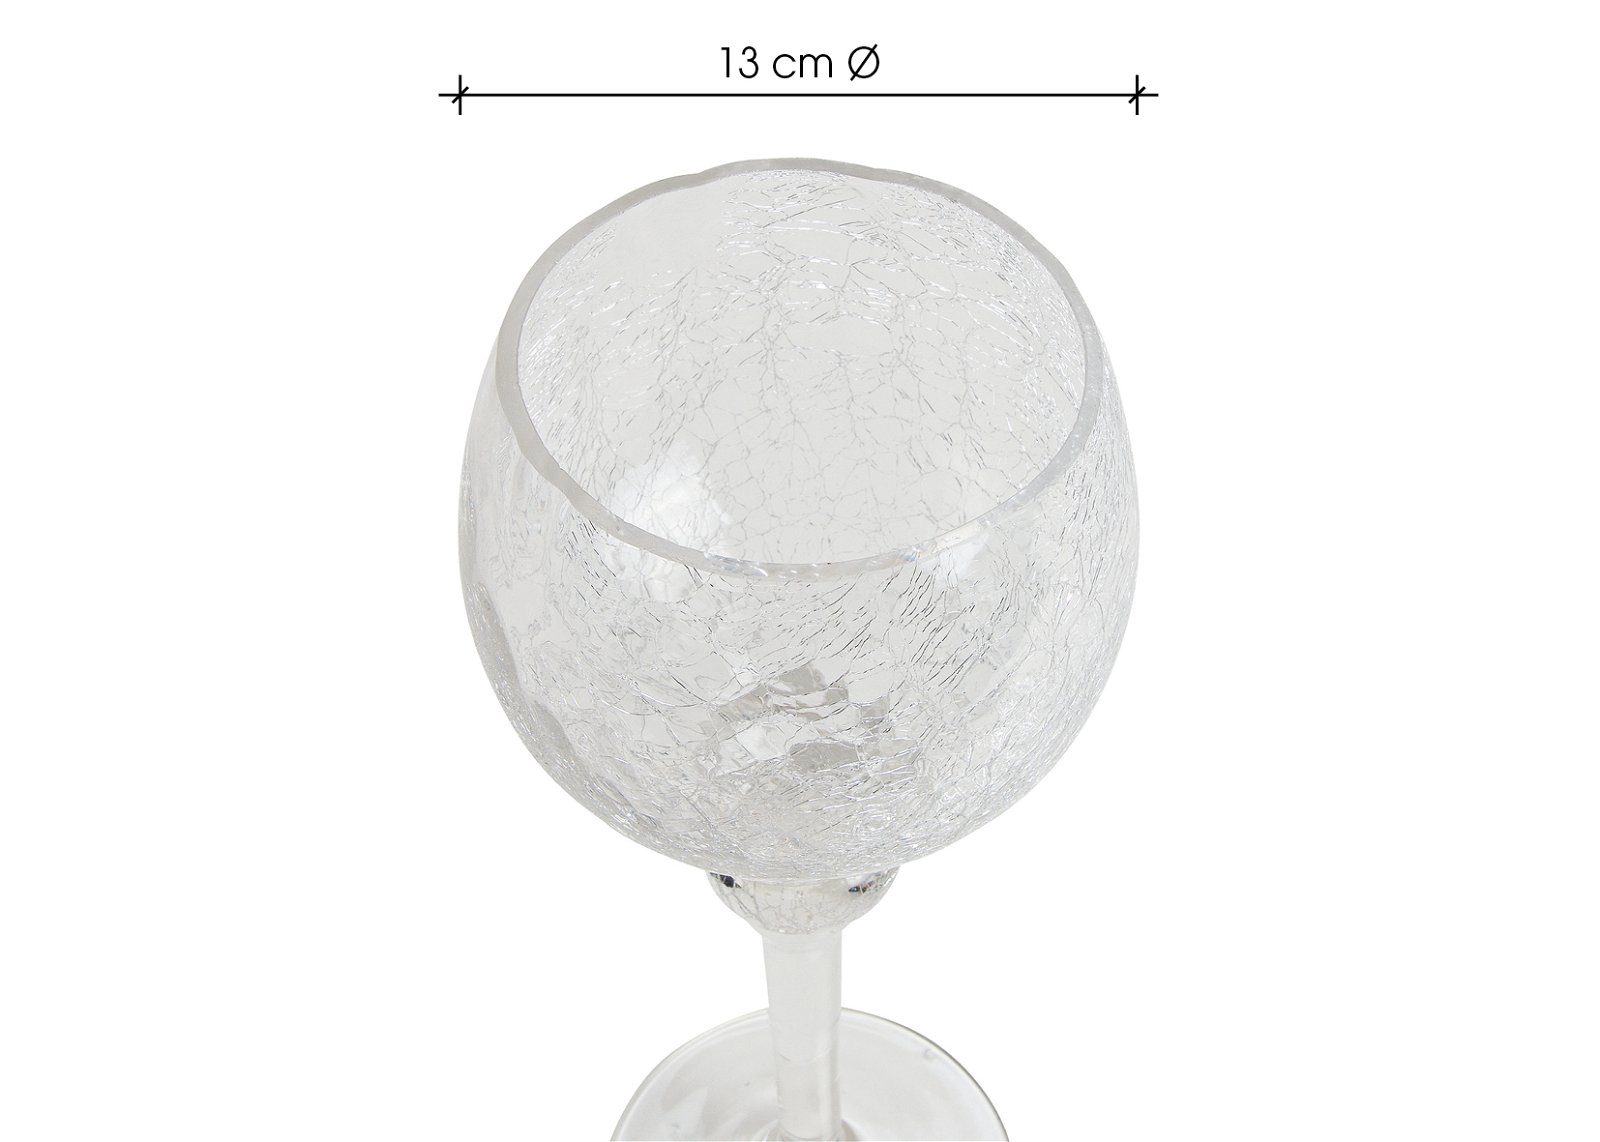 Photophore Set Calice Cracking transparent 30, 35, 40cm x Ø13cm en verre 3pcs.